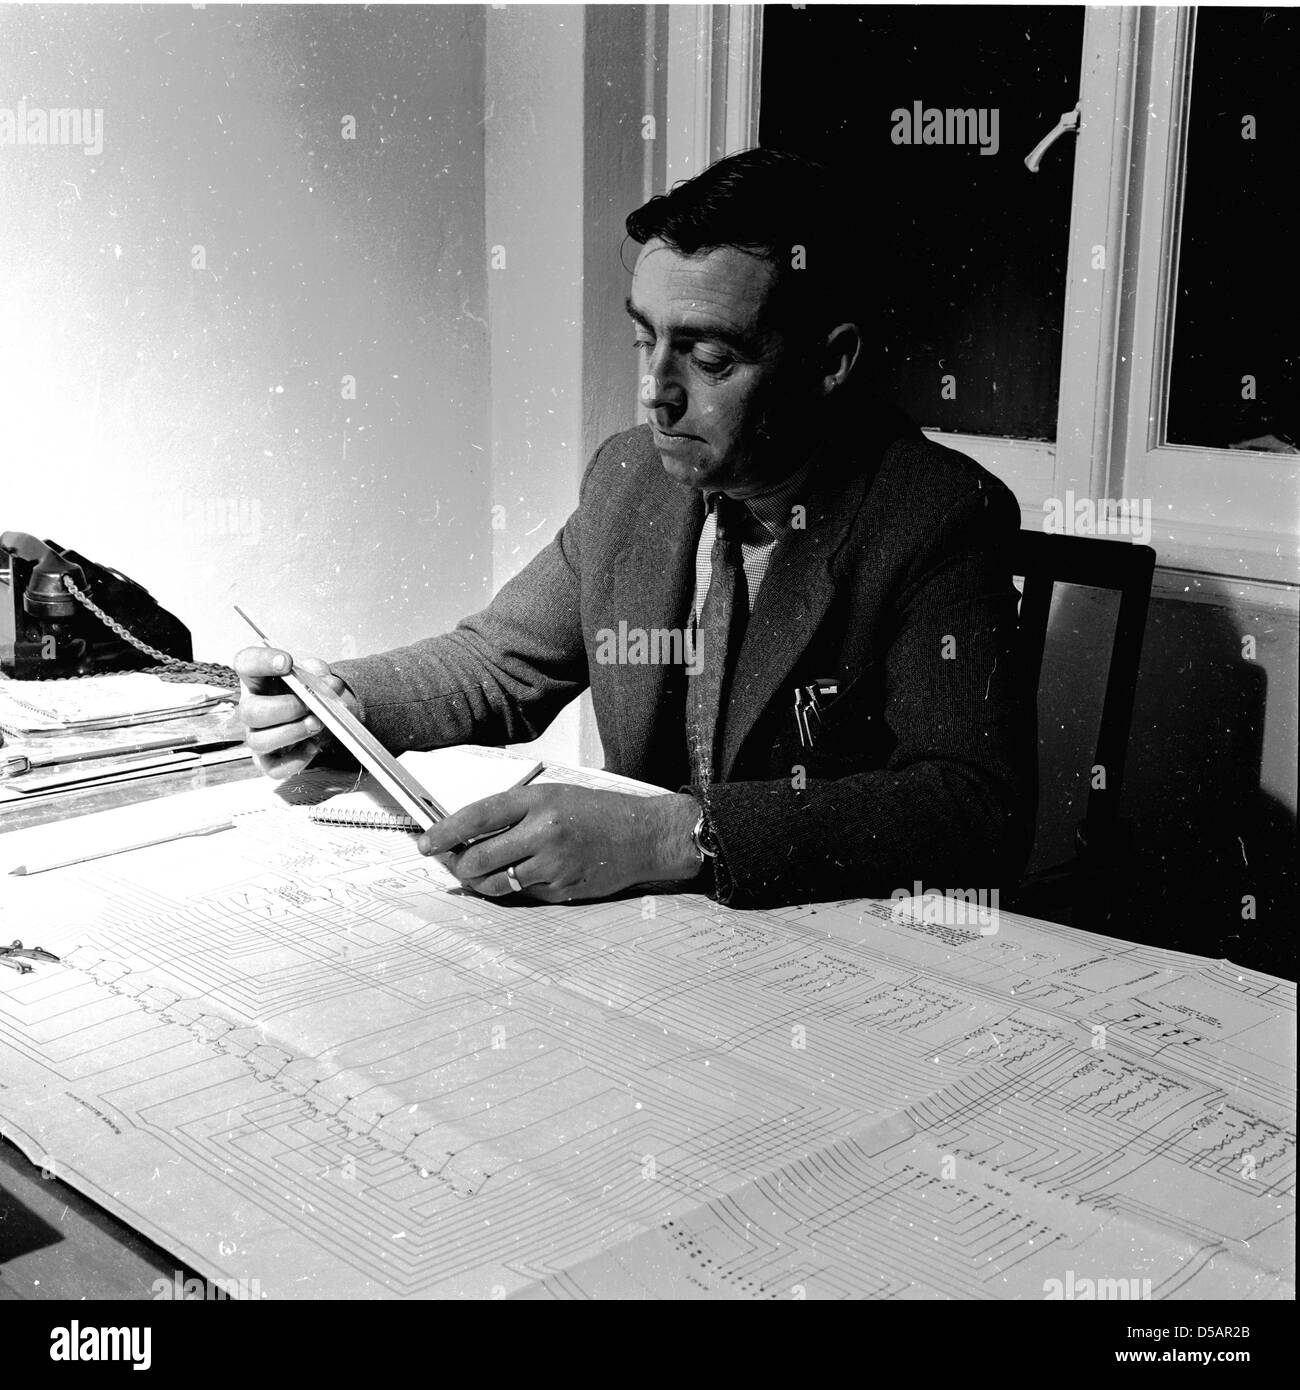 Historique, 1950. Un homme travaille à son bureau sur une grande feuille de papier avec des graphiques. Banque D'Images